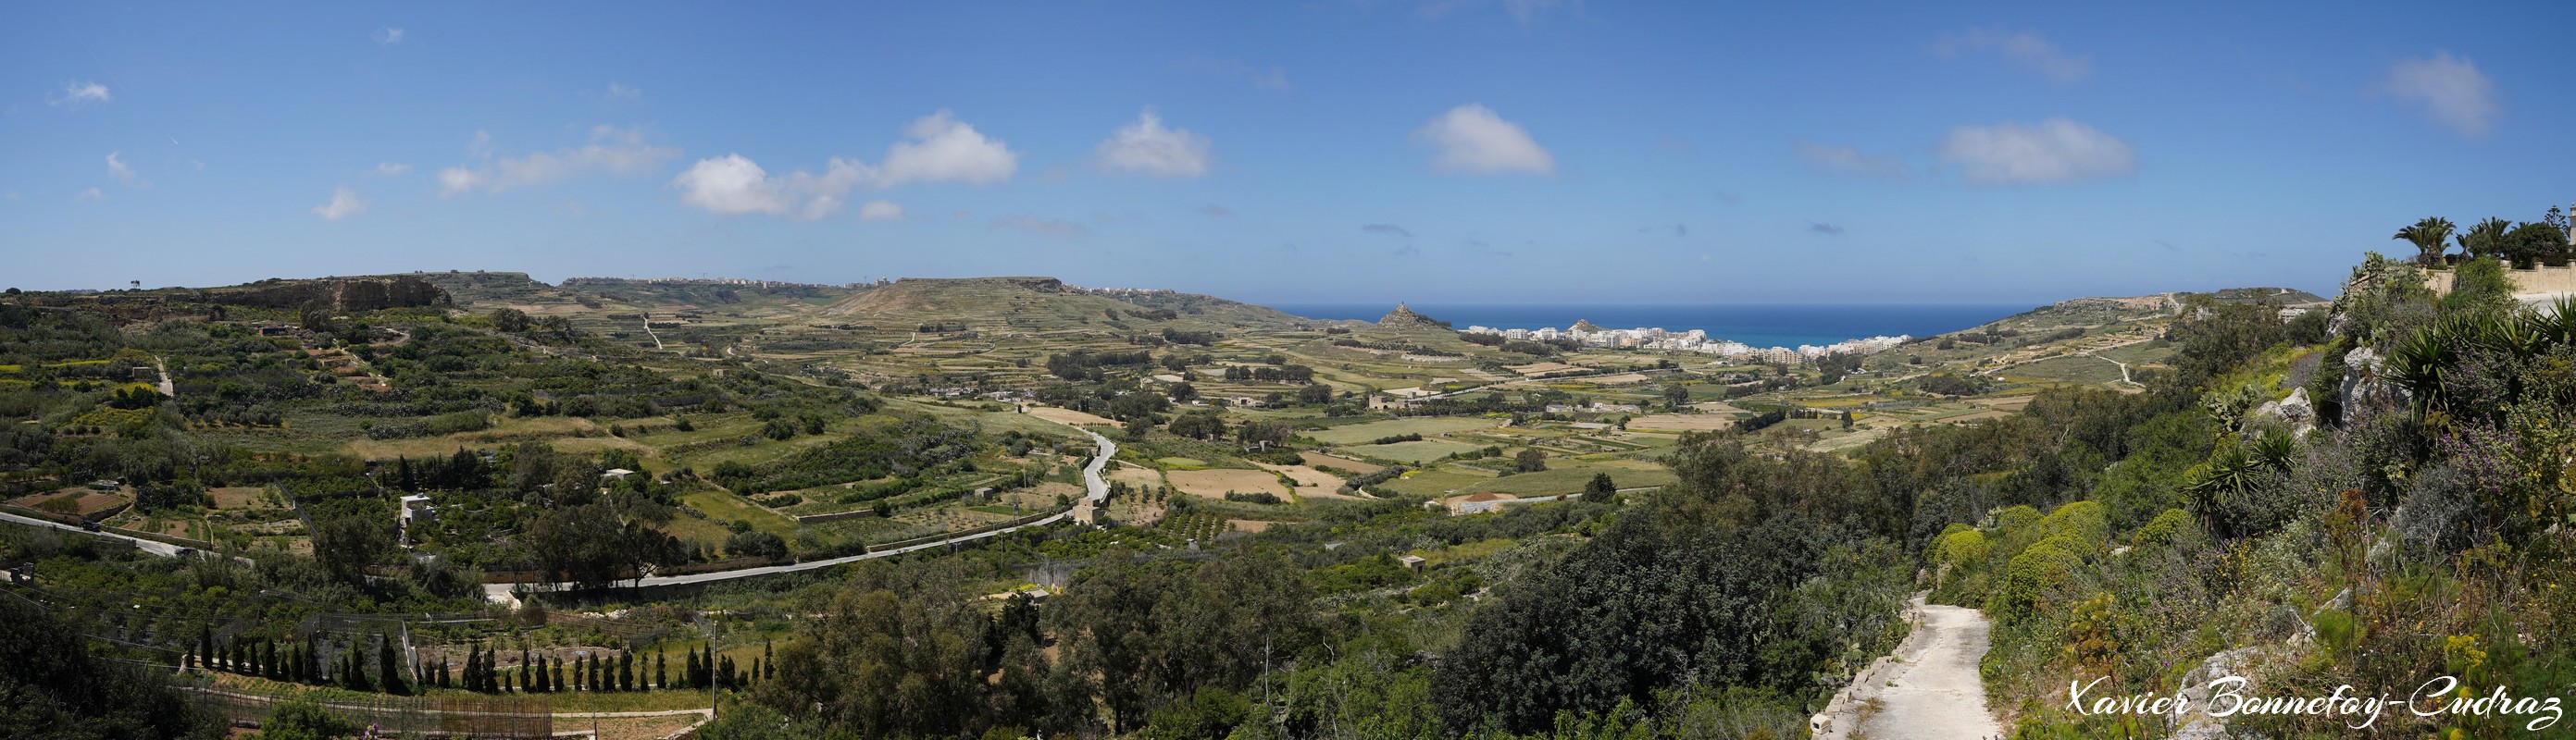 Gozo - Xaghra - Panorama on Marsalforn
Mots-clés: geo:lat=36.05547005 geo:lon=14.26053151 geotagged Ix-Xagħra Malte MLT Ta’ Bullara Xagħra Malta Gozo Xaghra panorama